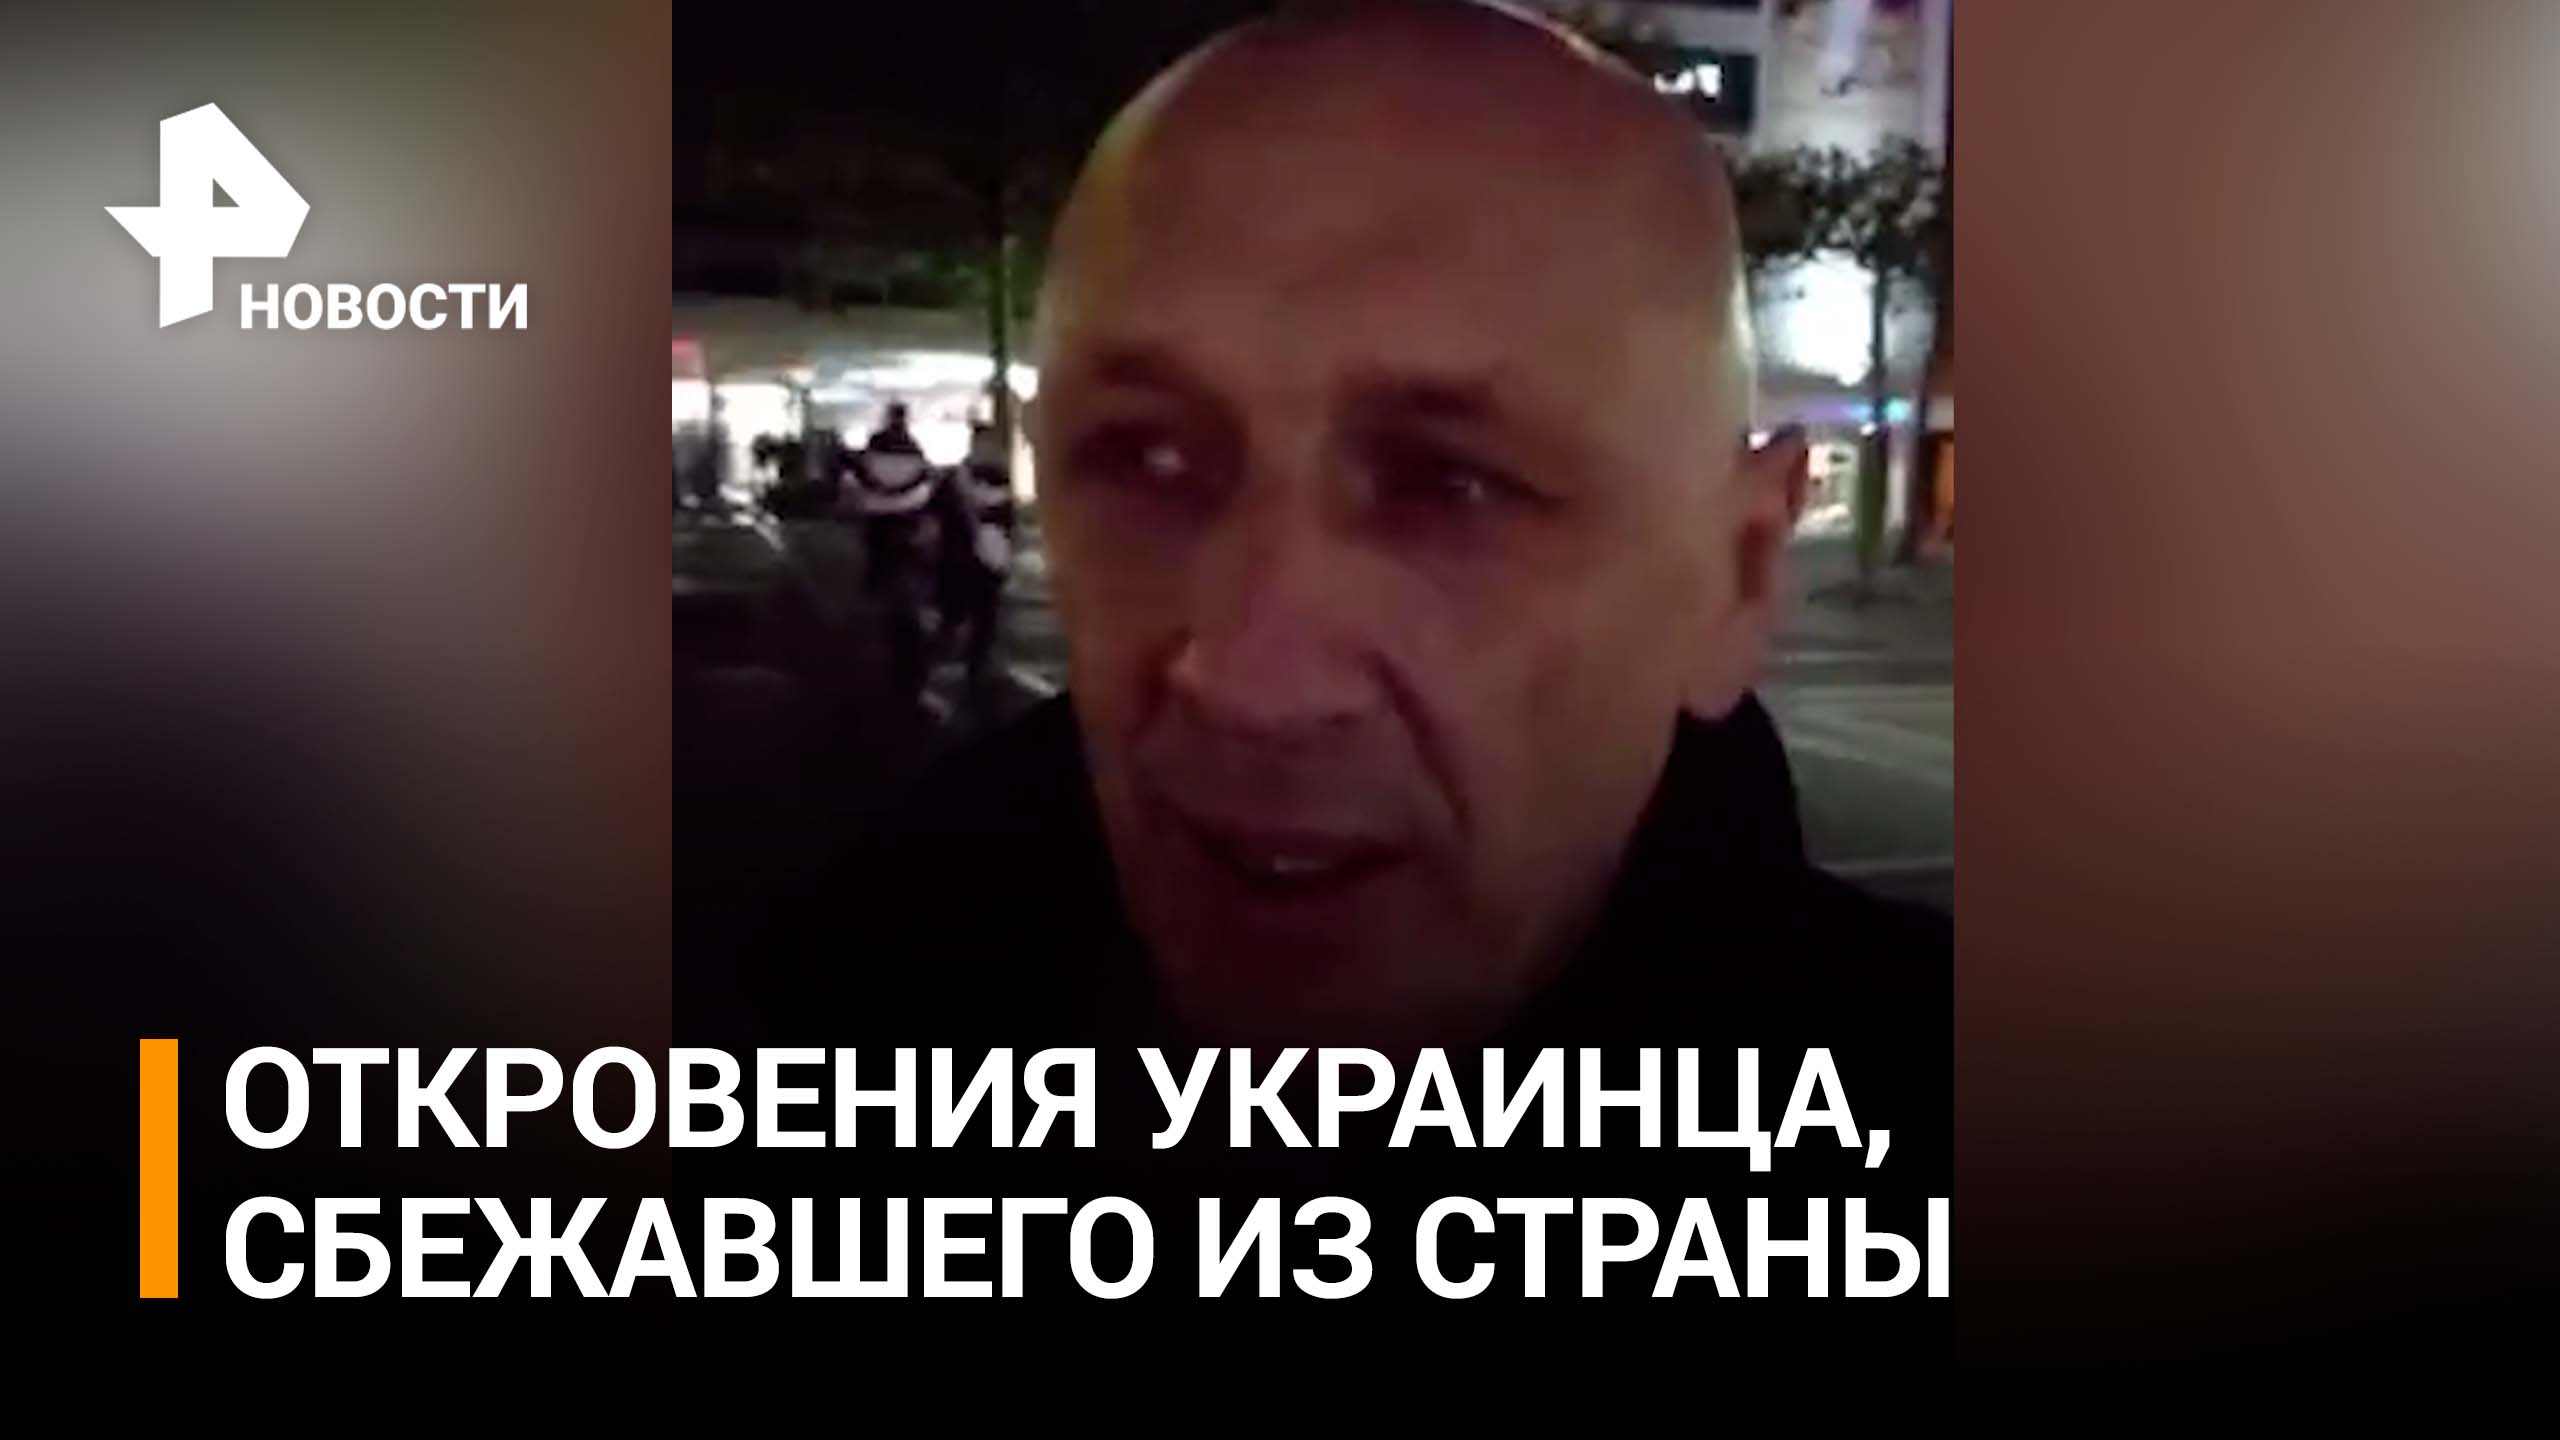 "Если бандеровцы окажутся в России, это пи***" Украинец, бежавший в Европу обратился к россиянам